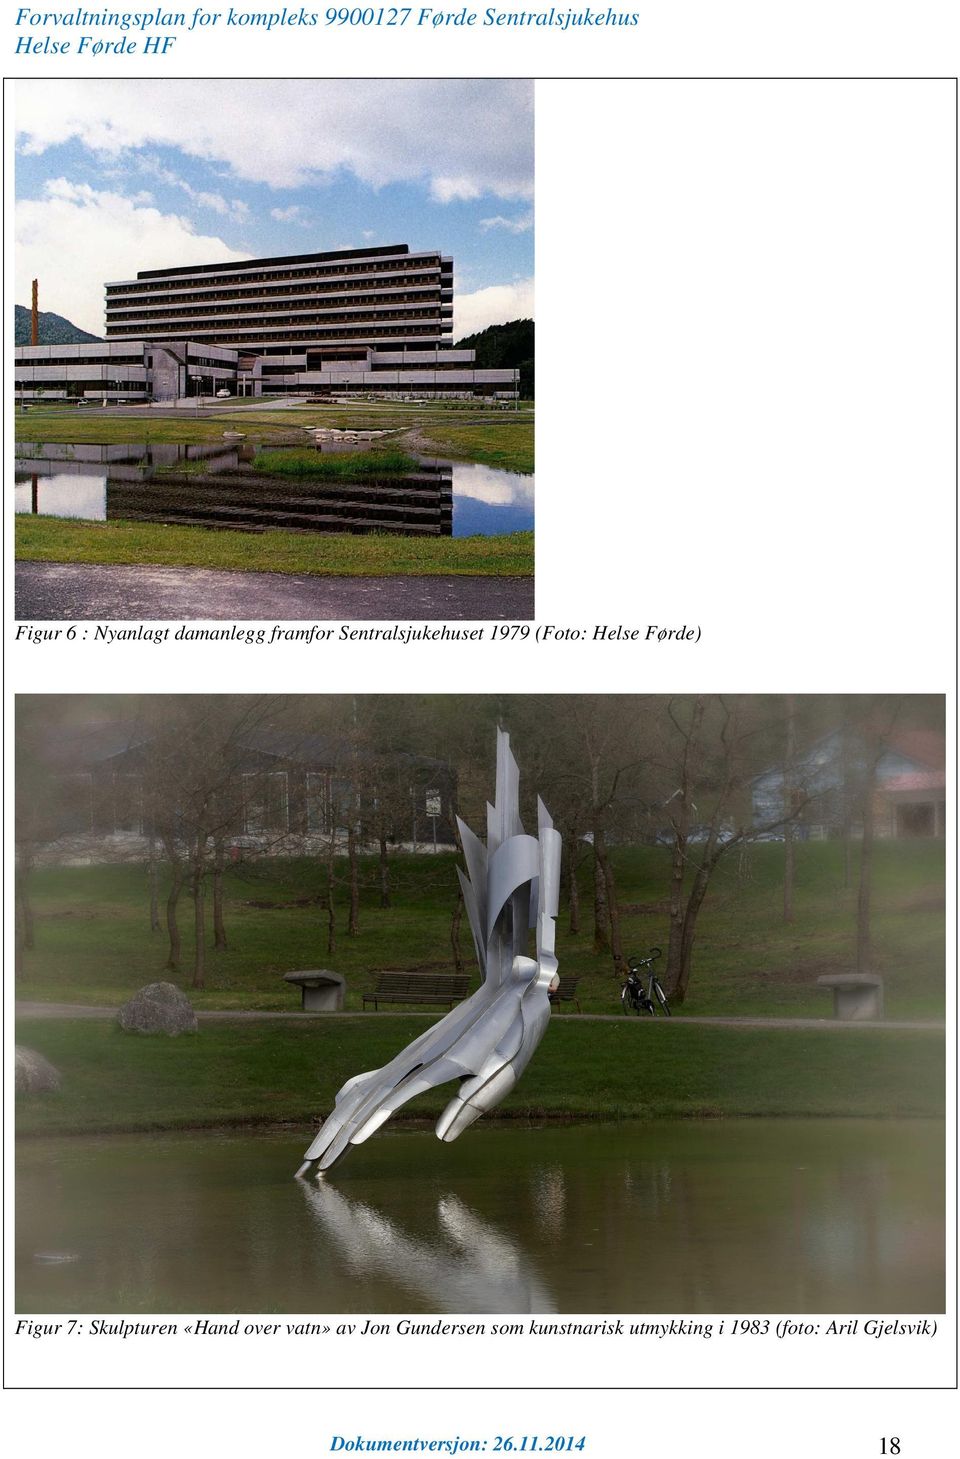 Figur 7: Skulpturen «Hand over vatn» av Jon Gundersen som kunstnarisk